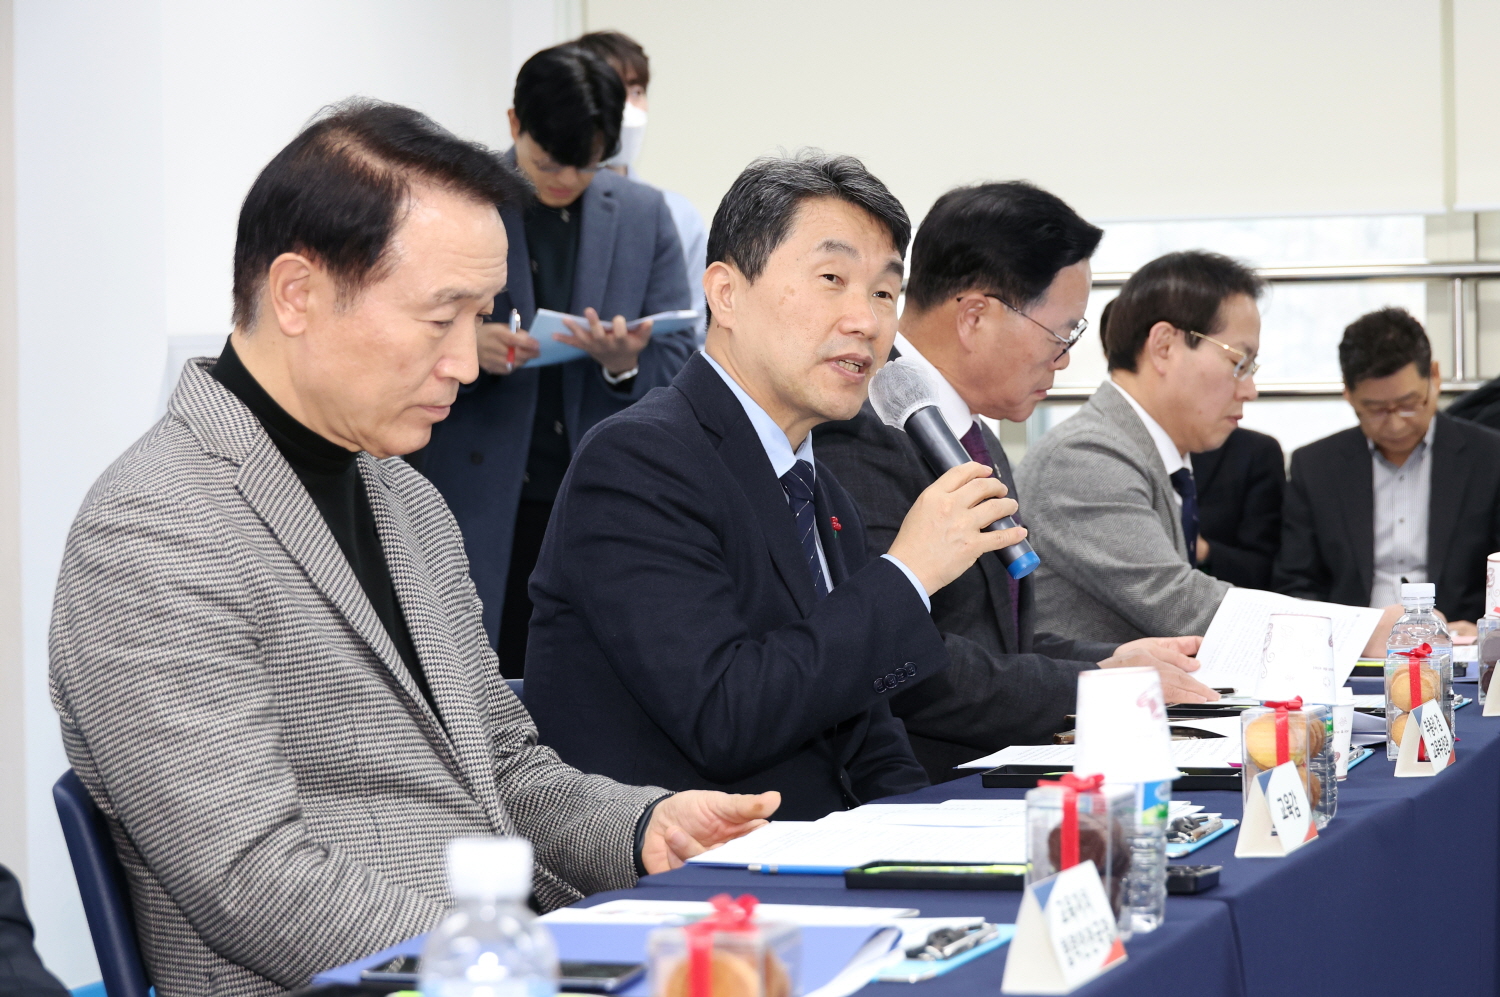 이주호 부총리 겸 교육부장관은 1월 9일(화), 경기도 양주시의 상수초등학교를 방문했다.